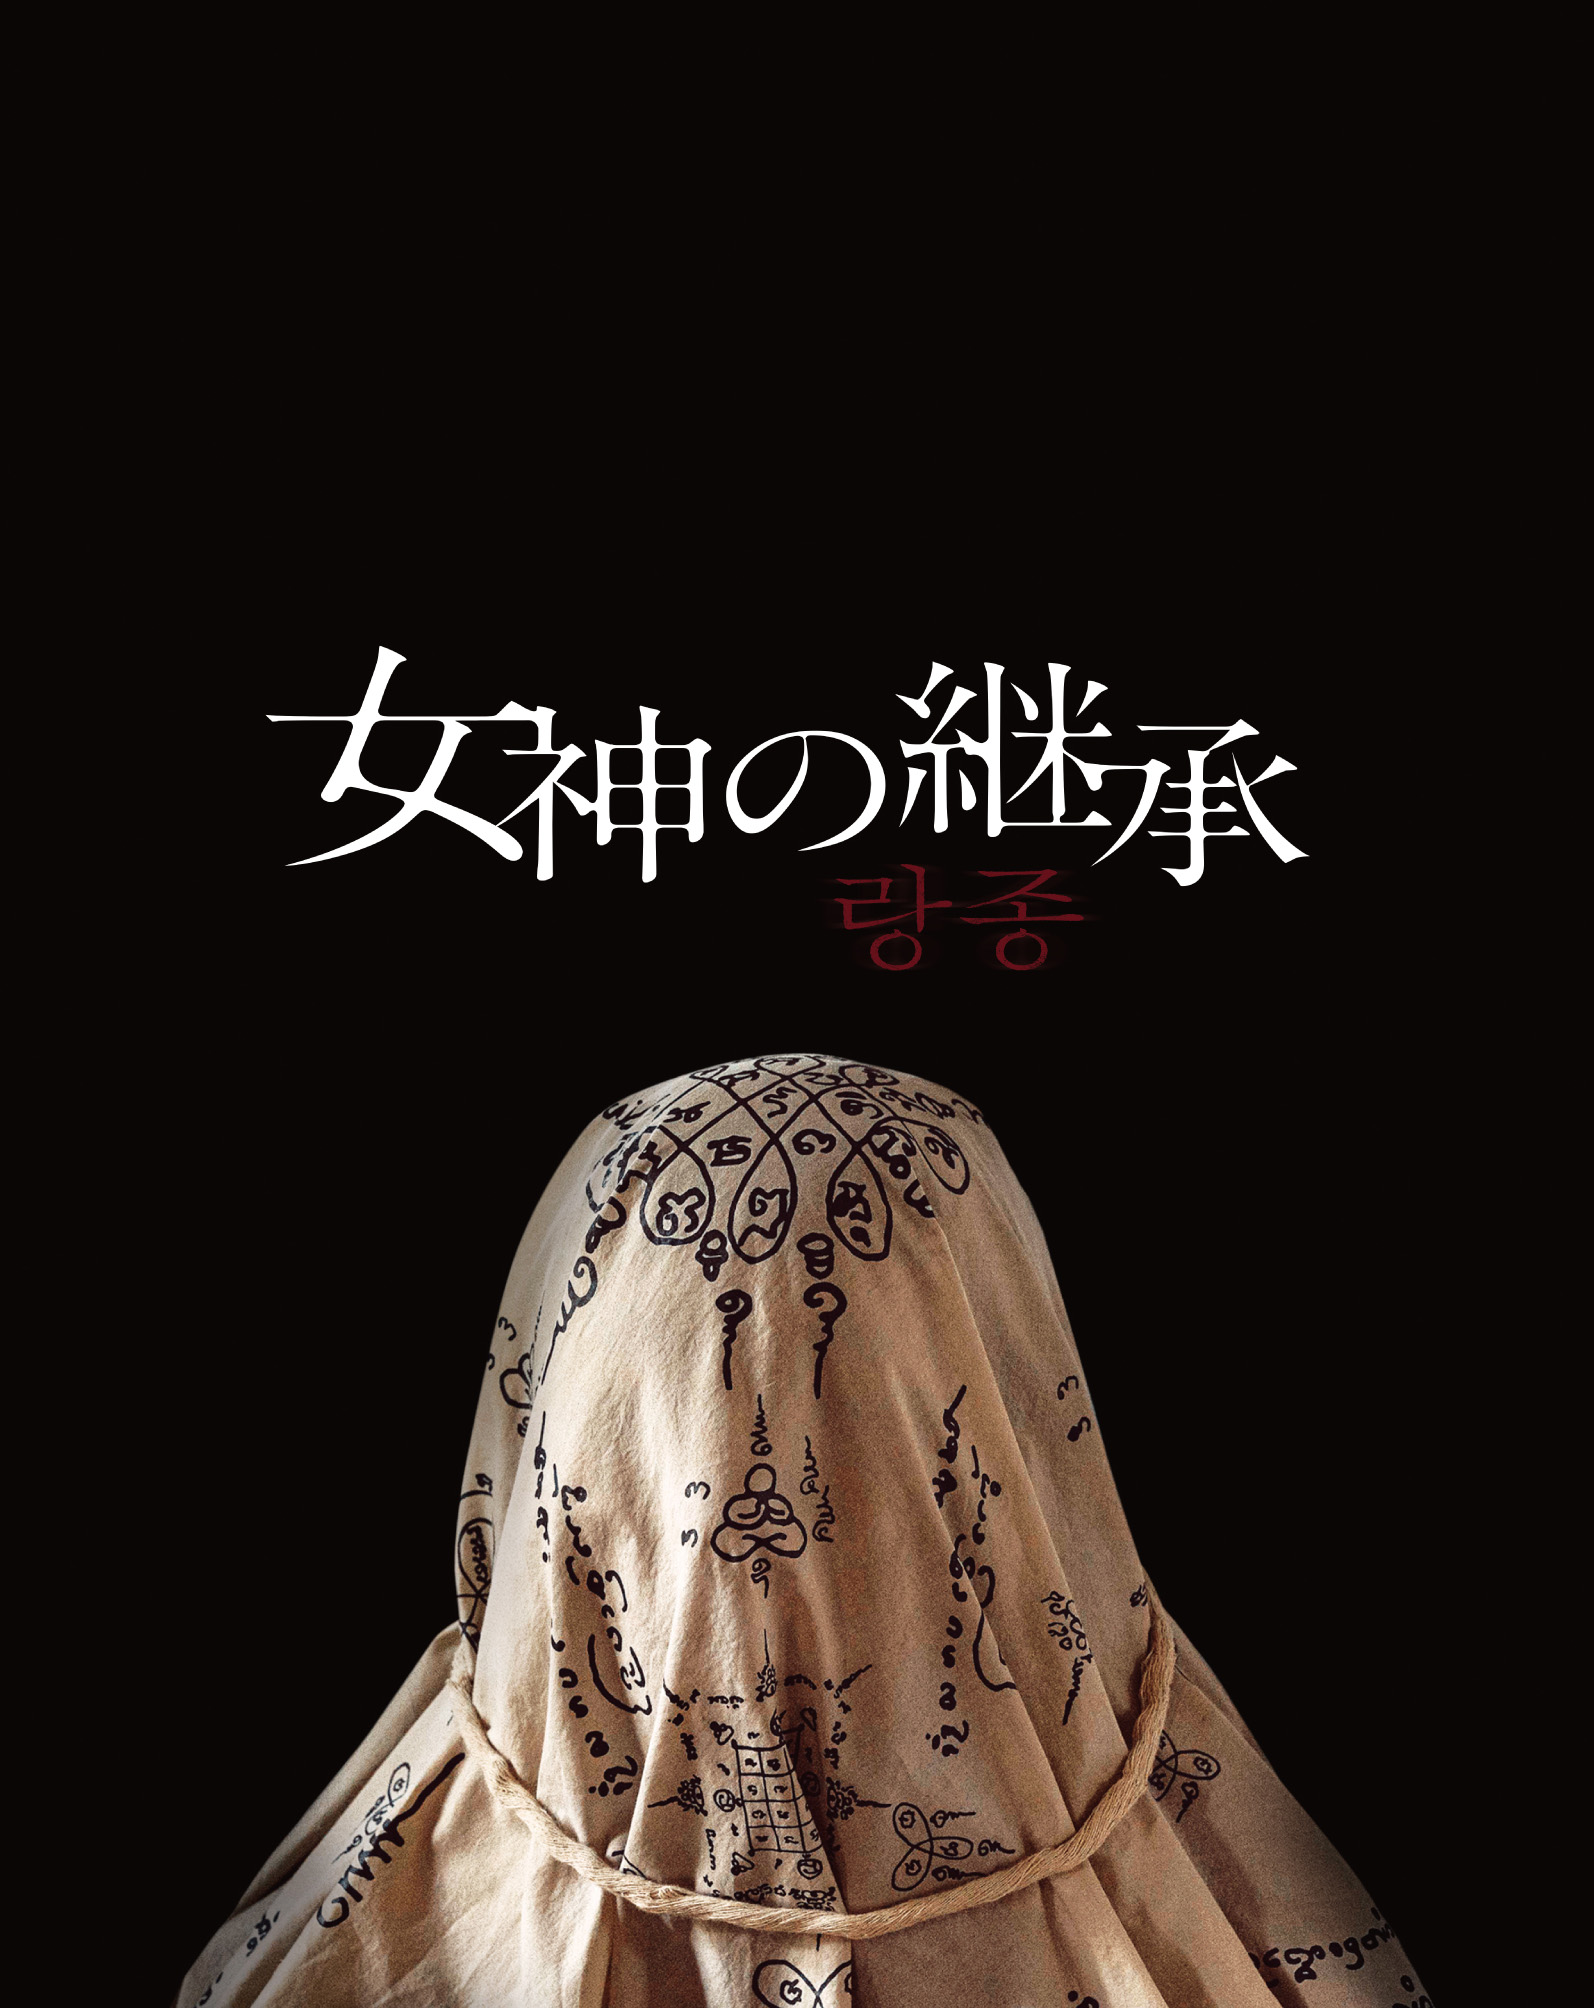 オム・テグ、ユ・ジェミョン共演の本格ミステリー「ホームタウンー消される過去ー」DVD-BOXが8月3日発売決定